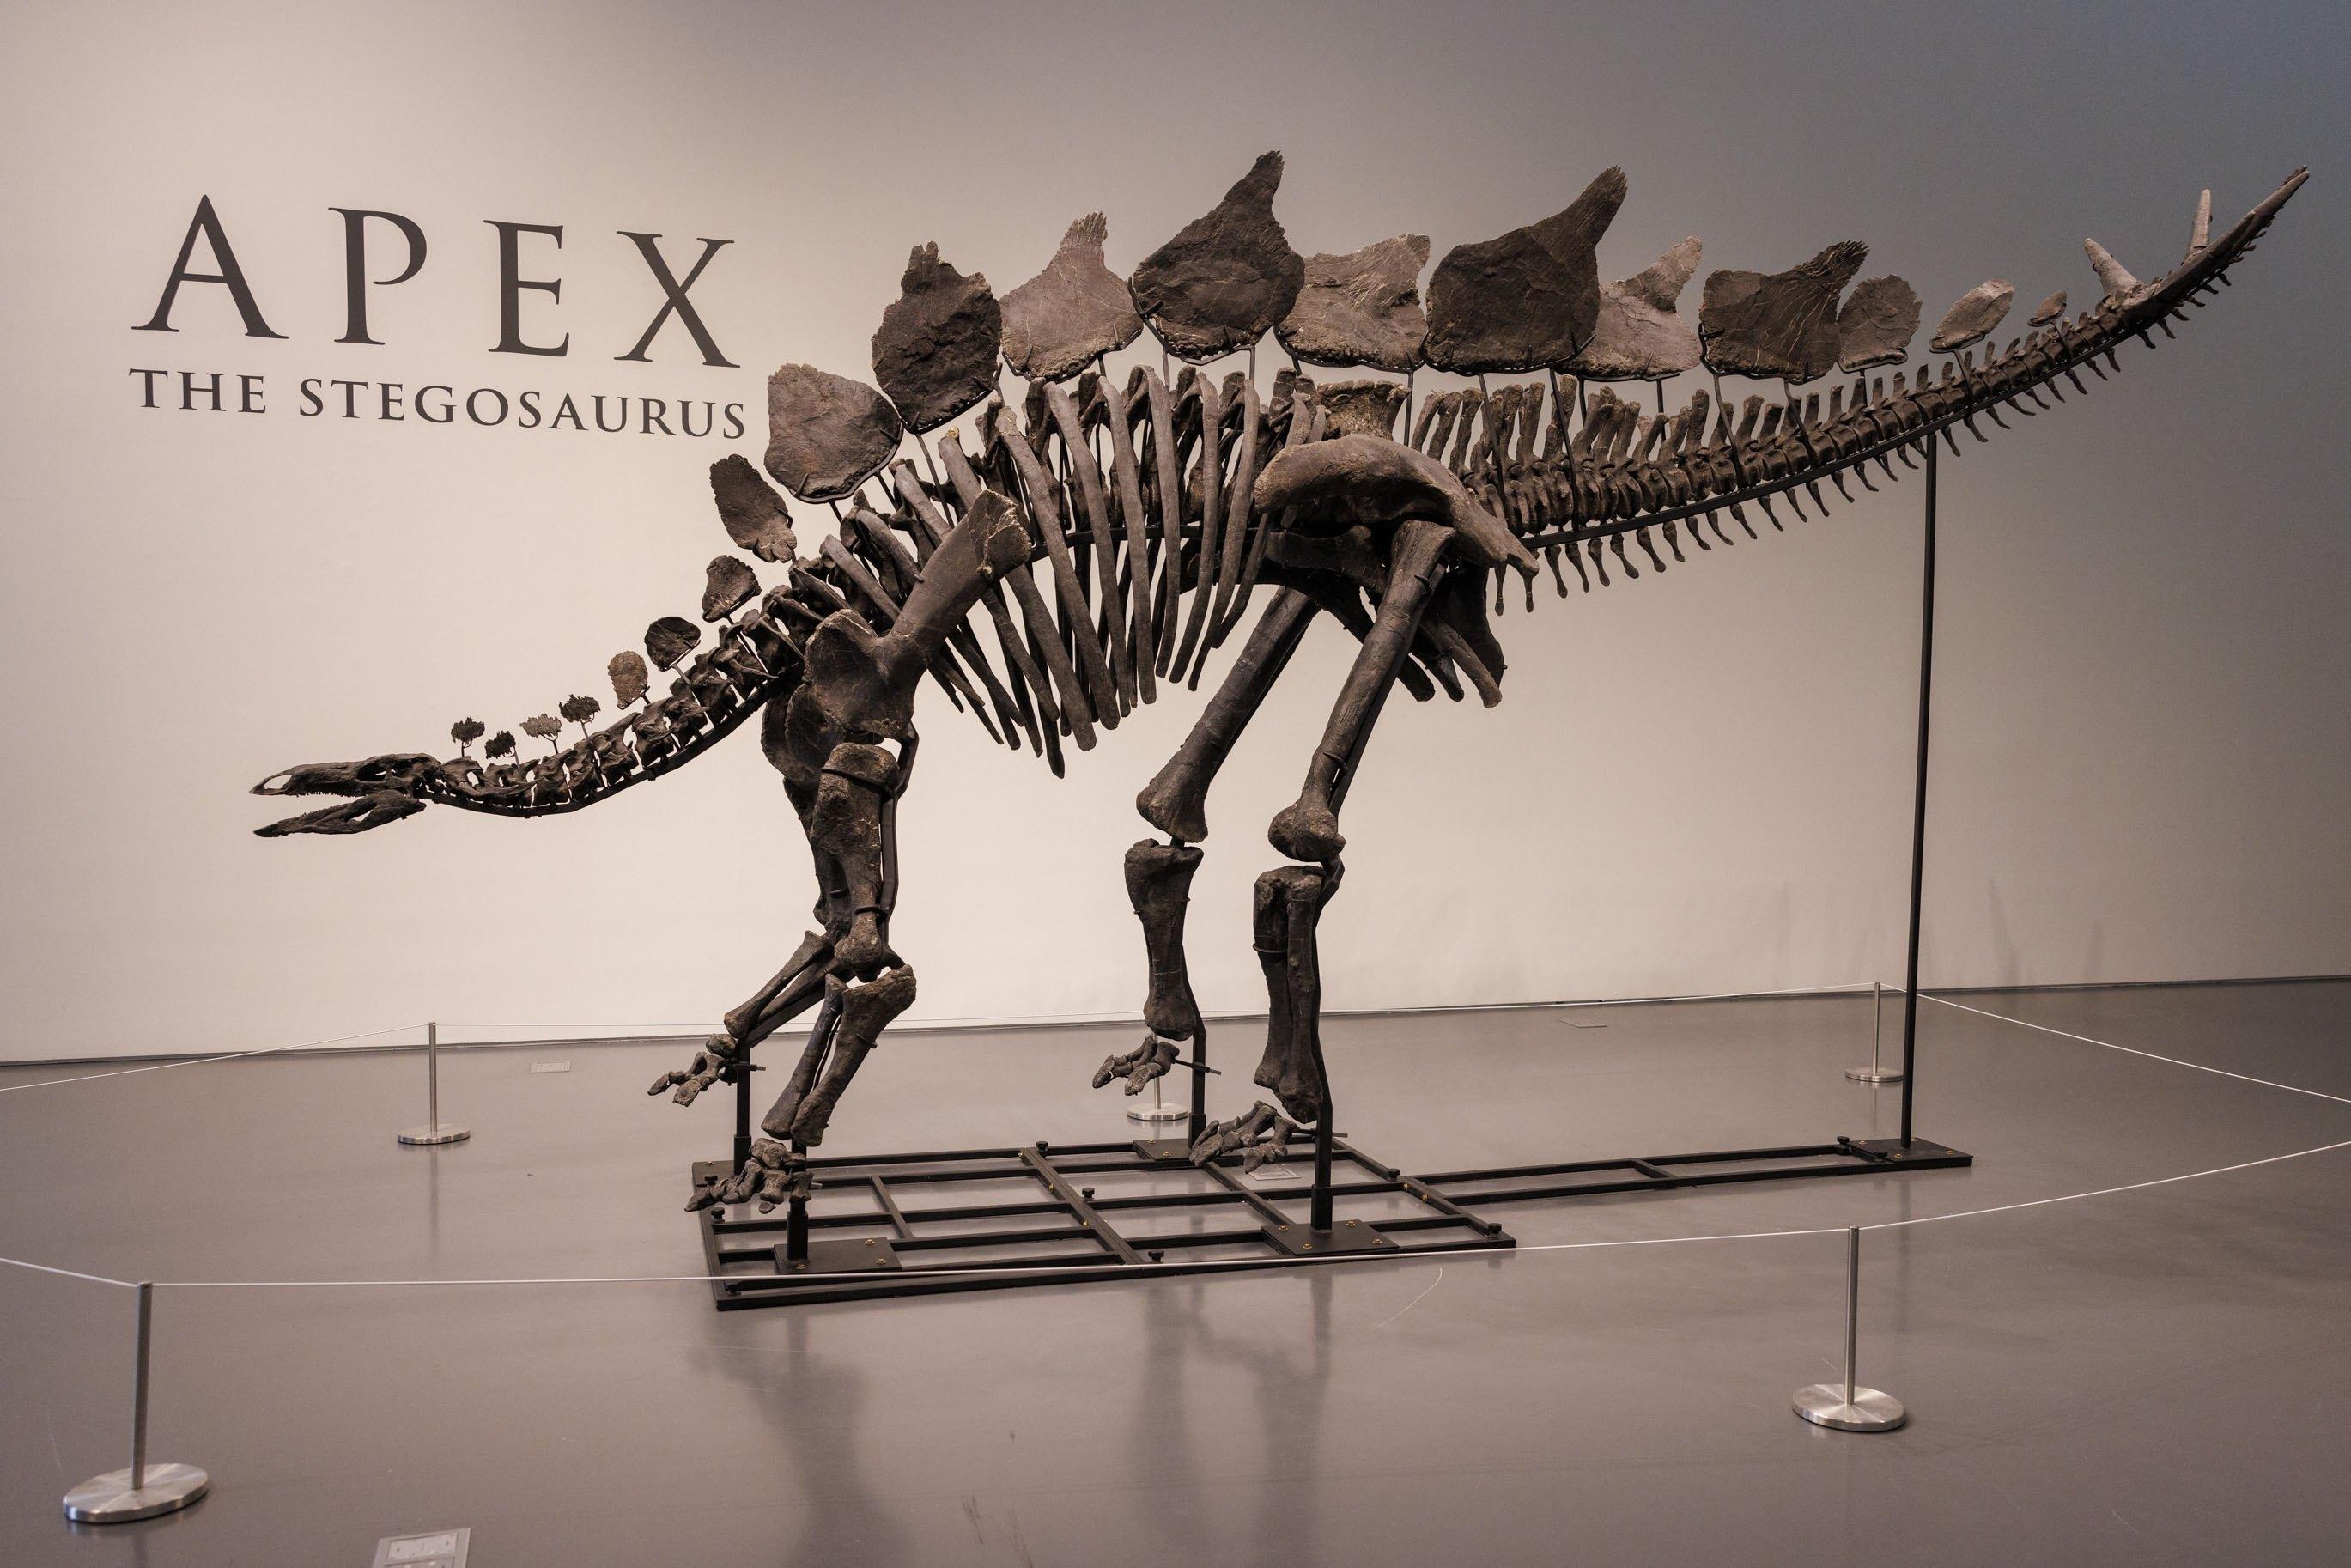 Dinozor iskeleti rekor fiyata alıcı buldu!